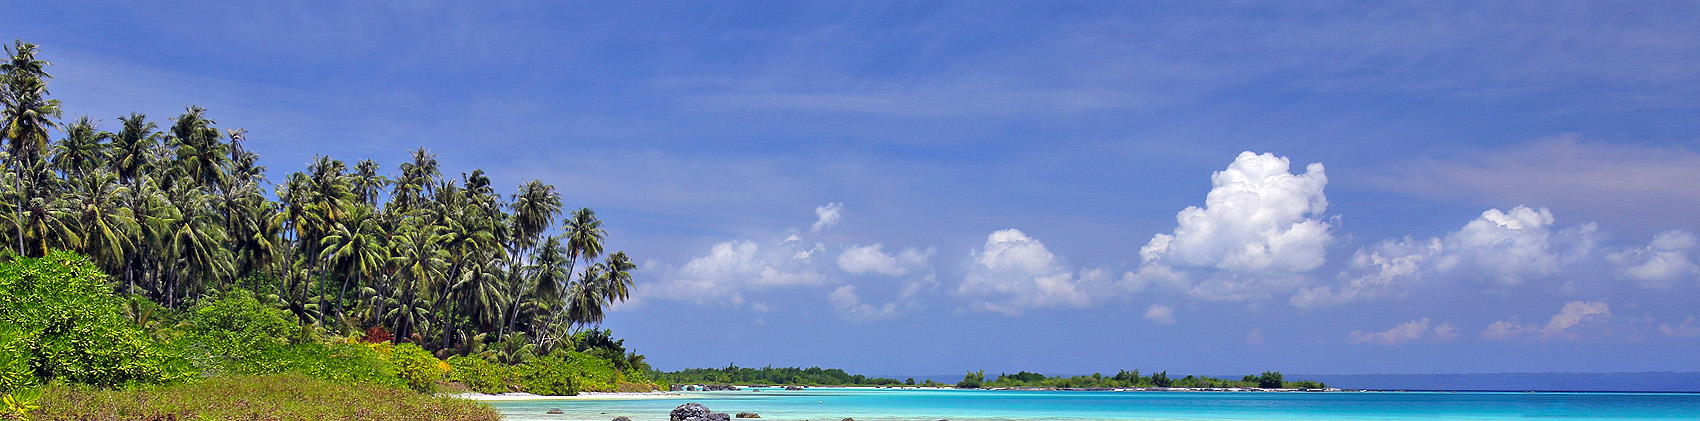 Wunga Island off the west-coast of North Nias (Nias Utara), Nias Island, Indonesia.